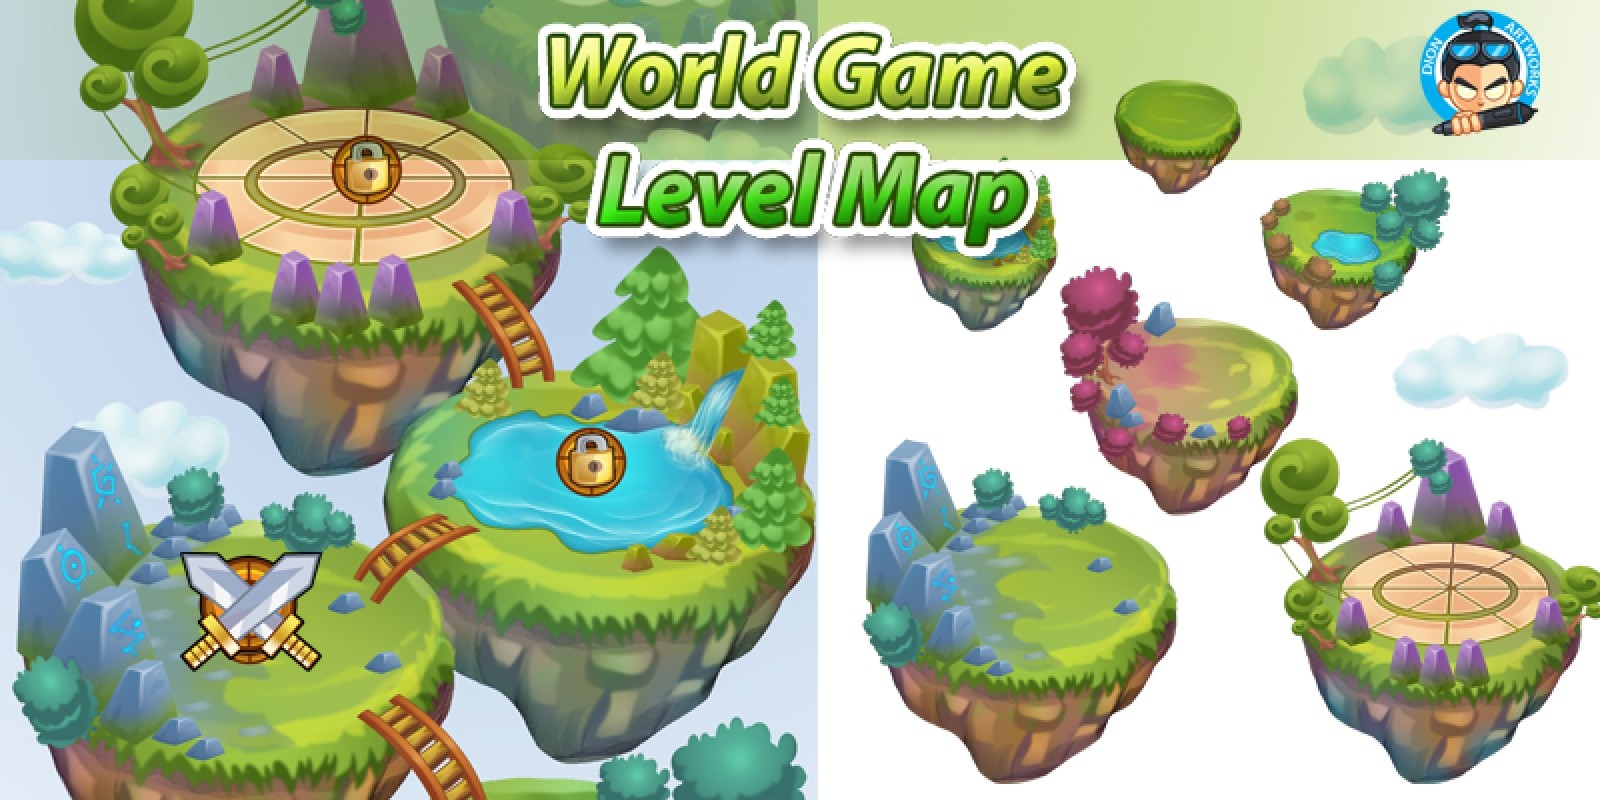 Game Level Map. Левел в игре. Зеленый мир игра. Уровни в игре. Уровень игры 218